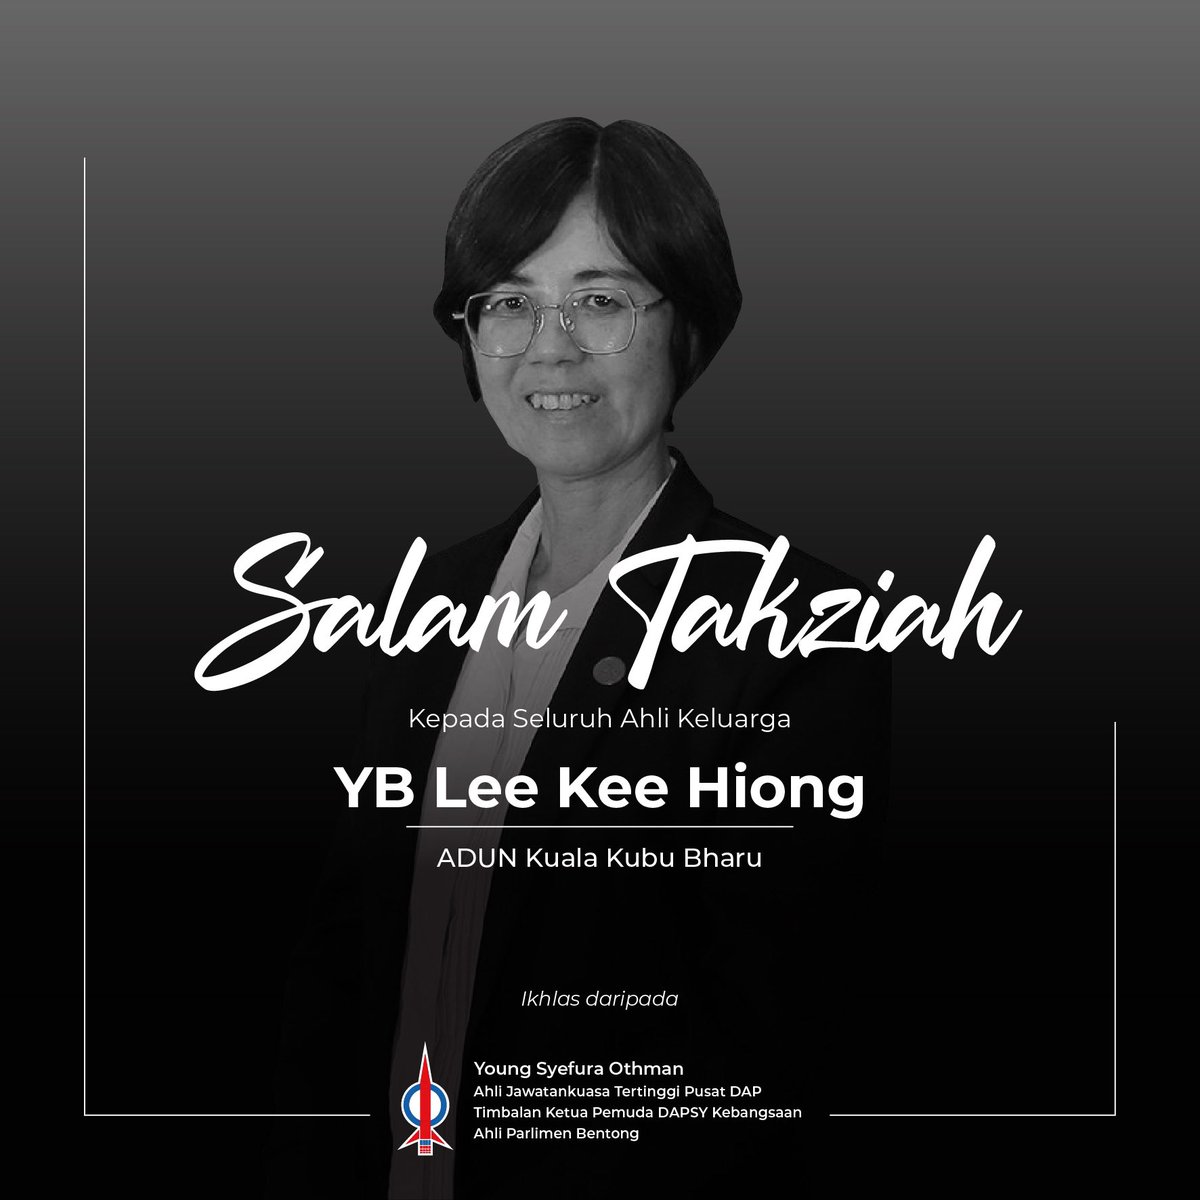 Dukacita dimaklumkan bahawa YB Lee Kee Hiong, yang merupakan ADUN Kuala Kubu Bharu, telah pun meninggal dunia pagi tadi. Mendiang merupakan ahli parti dan pemimpin yang telah banyak berjasa memperjuangkan nasib rakyat dan prihatin terhadap masyarakat. Pemergian beliau pasti…